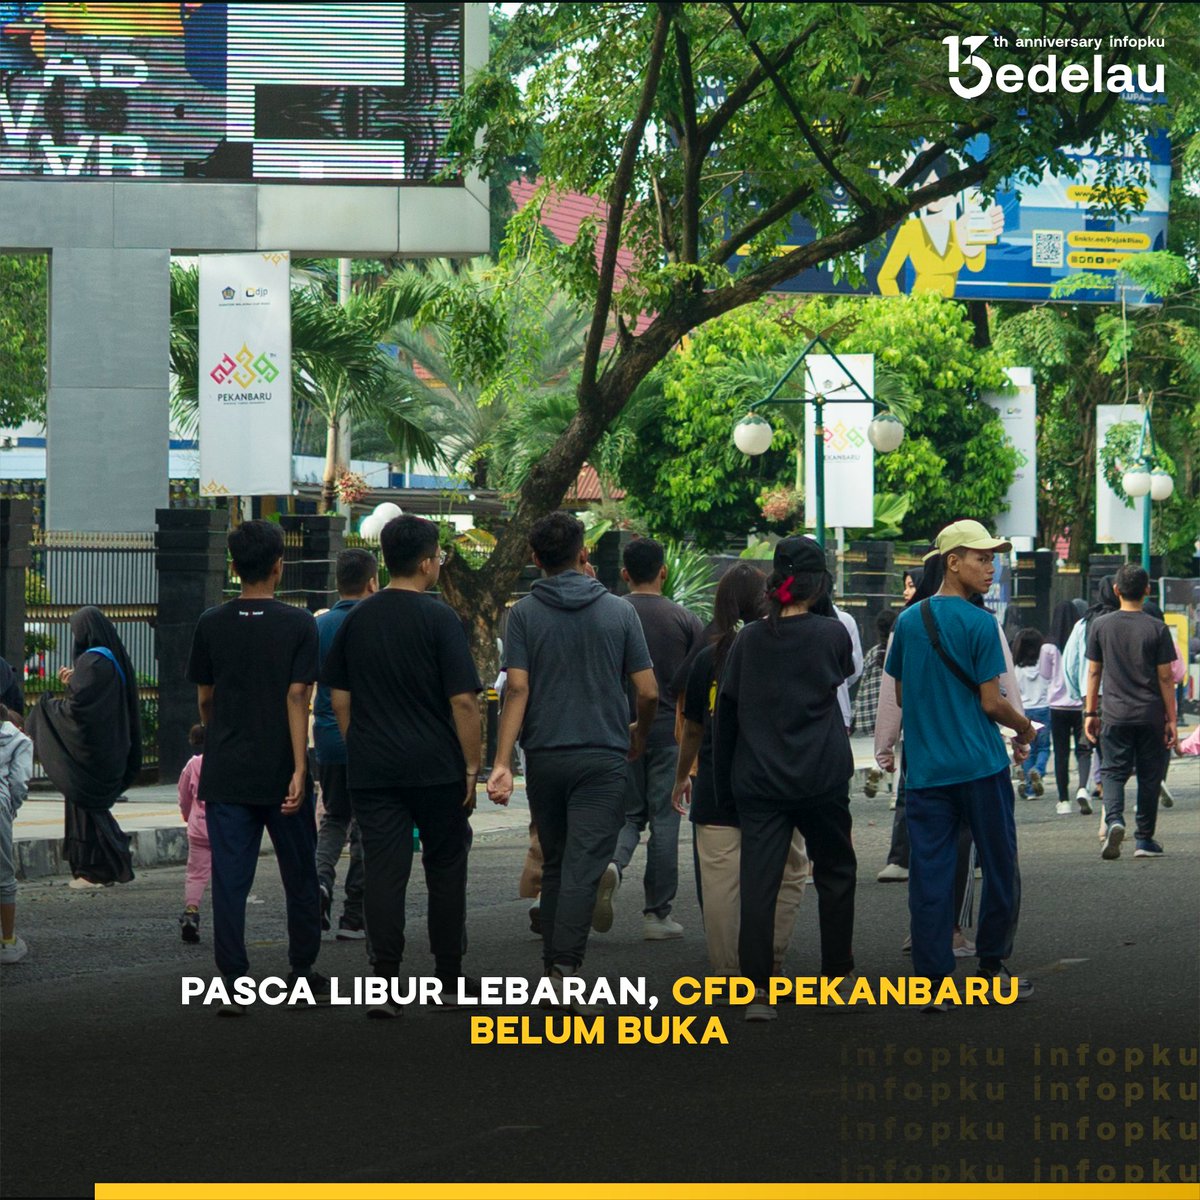 Aktivitas di Car Free Day (CFD) atau Hari Bebas Kendaraan Bermotor (HBKB) di Kota Pekanbaru belum digelar. Sudah minggu kelima aktivitas CFD belum dibuka pasca Idulfitri 1445H.

#infoPKU #carfreedaypekanbaru